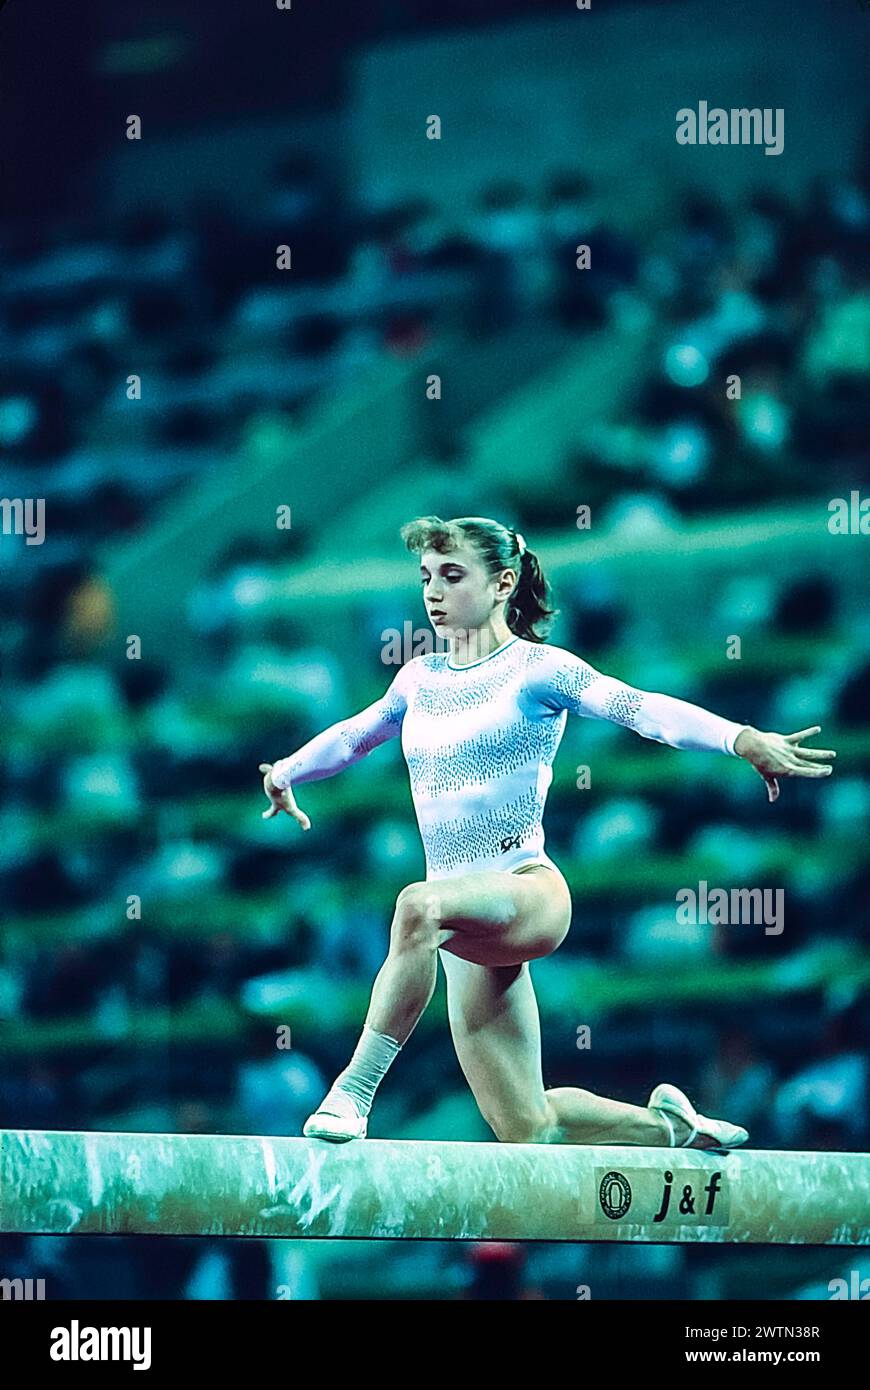 Kerri Strug (États-Unis) en compétition dans l'équipe artistique féminine de gymnastique générale aux Jeux Olympiques d'été de 1992. Banque D'Images